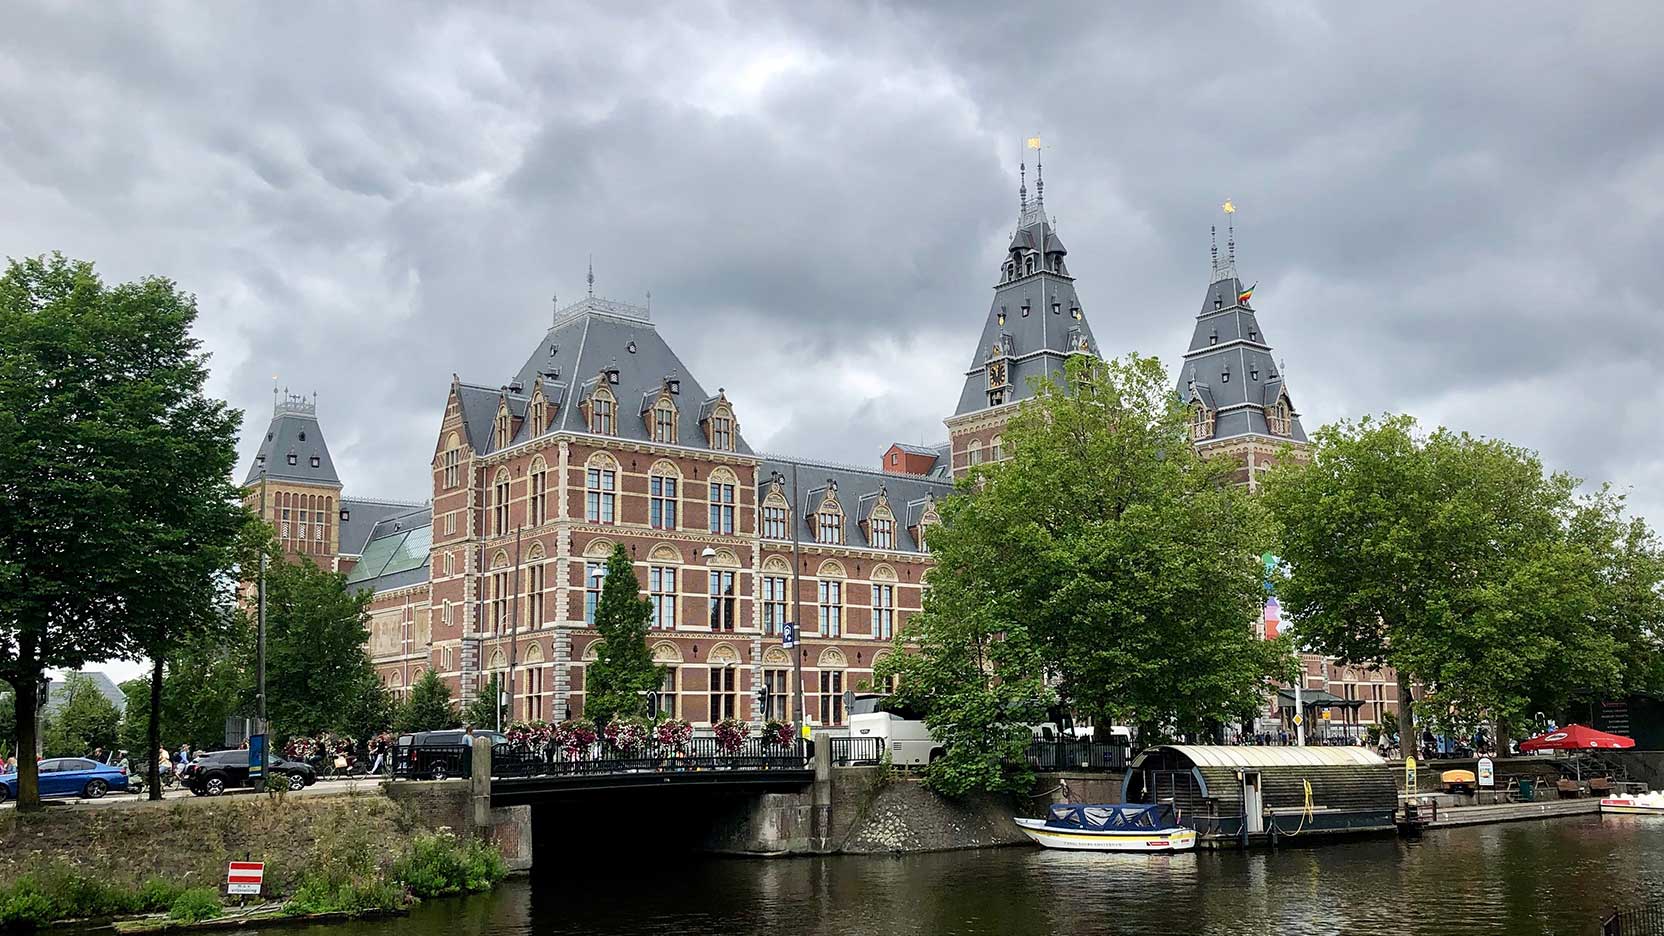 Rijksmuseum building, Amsterdam